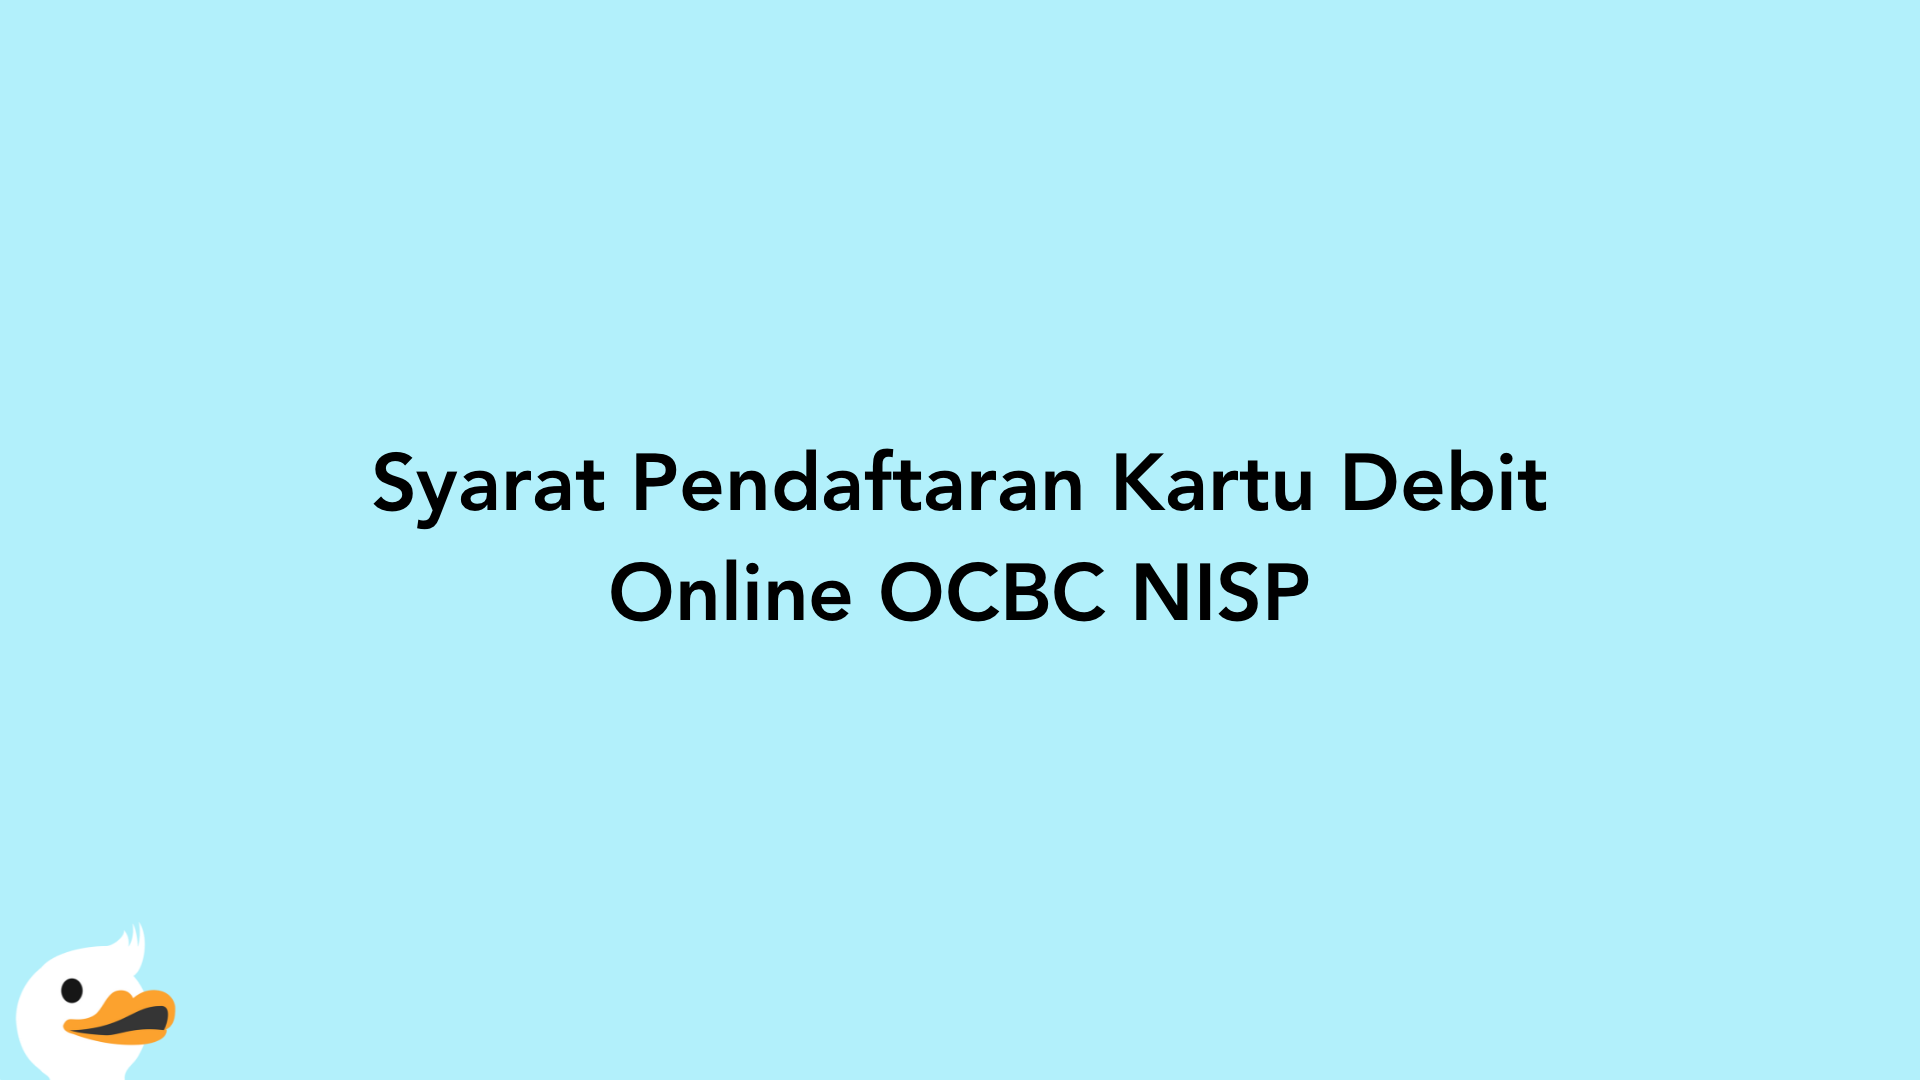 Syarat Pendaftaran Kartu Debit Online OCBC NISP